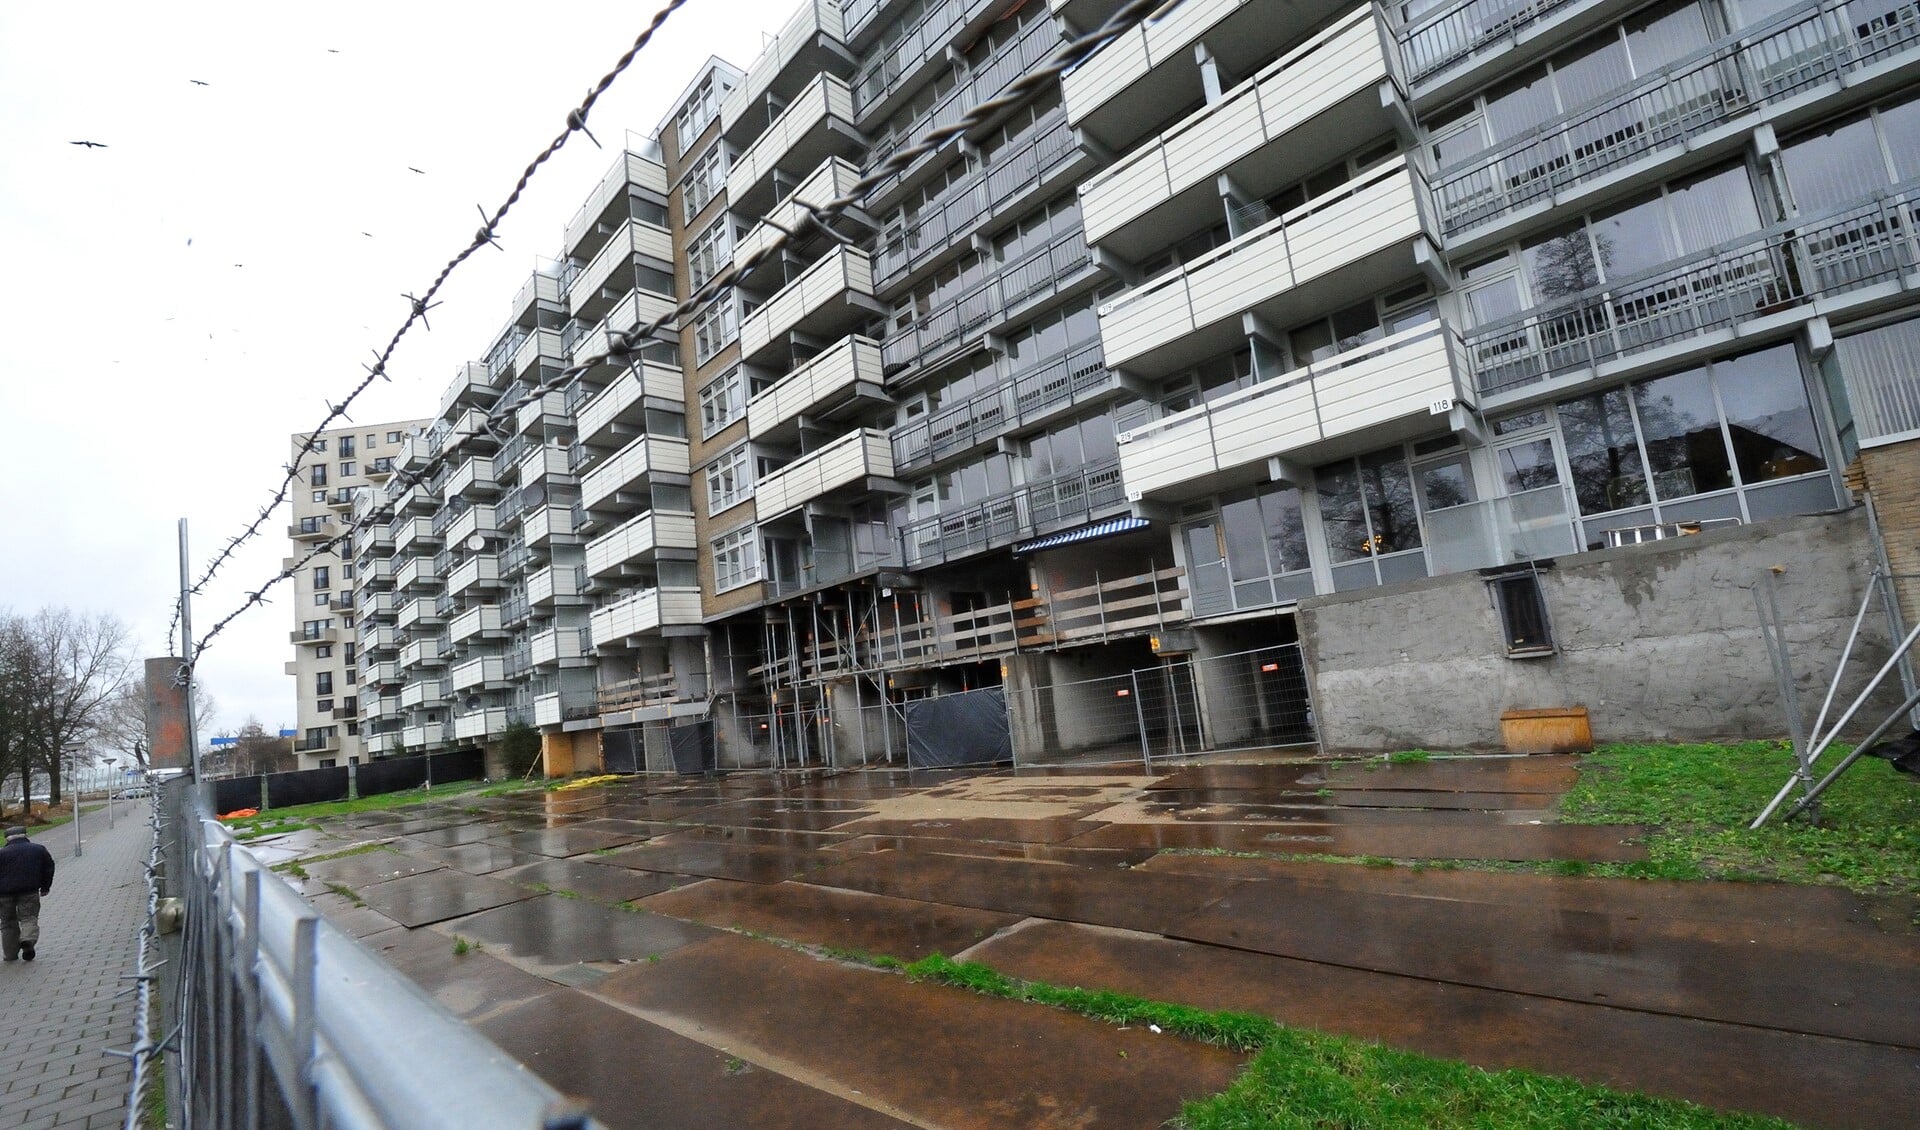 Woonstichting De Key hoopt dat de schade aan de flat al medio 2015 hersteld kan zijn